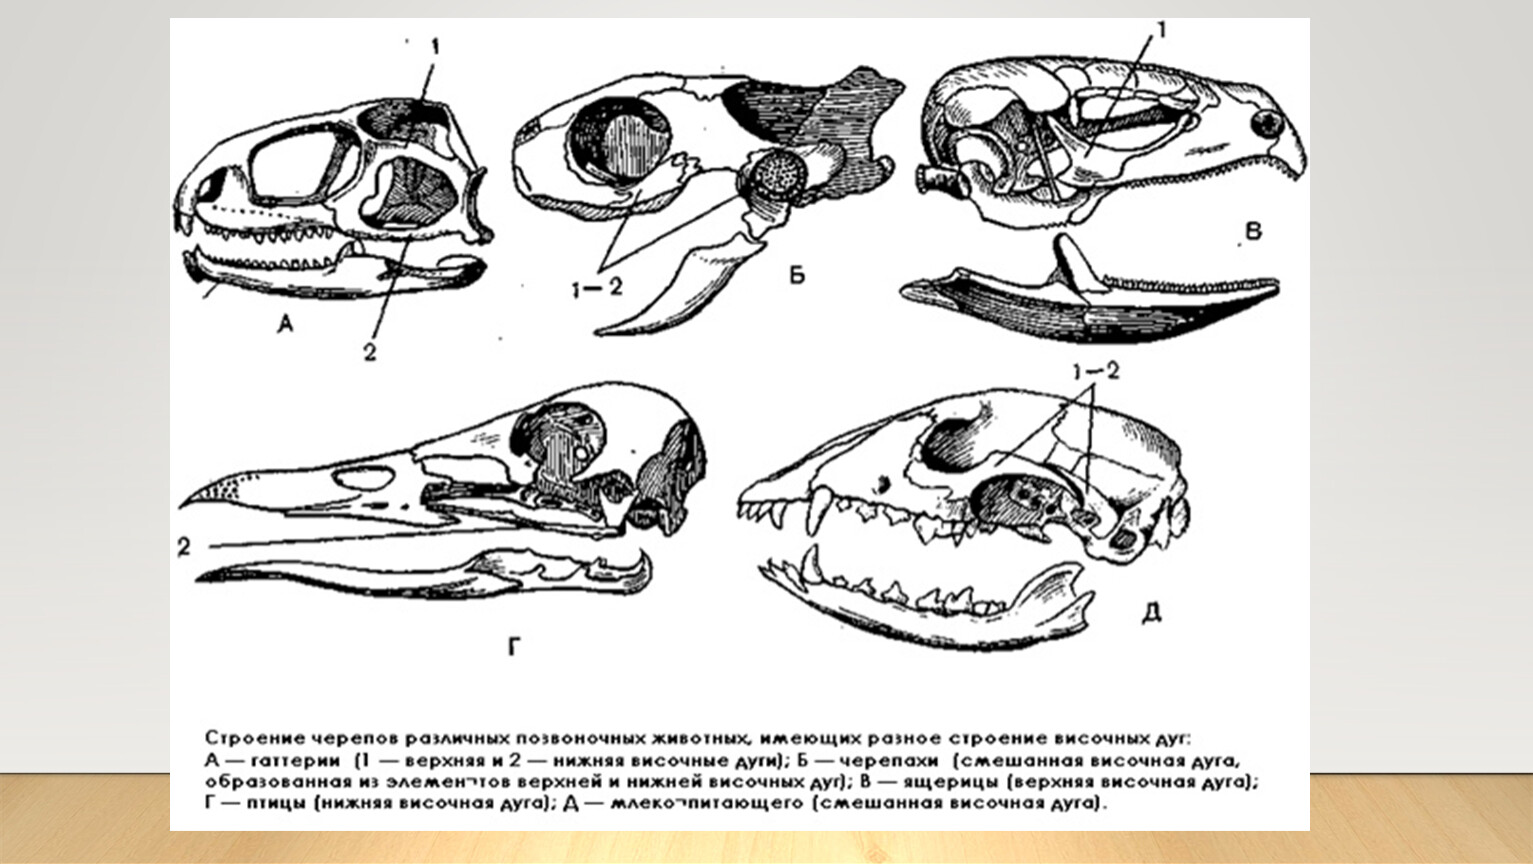 Изучите строение черепа млекопитающего. Филогенез черепа позвоночных. Эволюция висцерального черепа позвоночных. Филогенез висцерального черепа позвоночных. Эволюция скелета черепа у позвоночных.